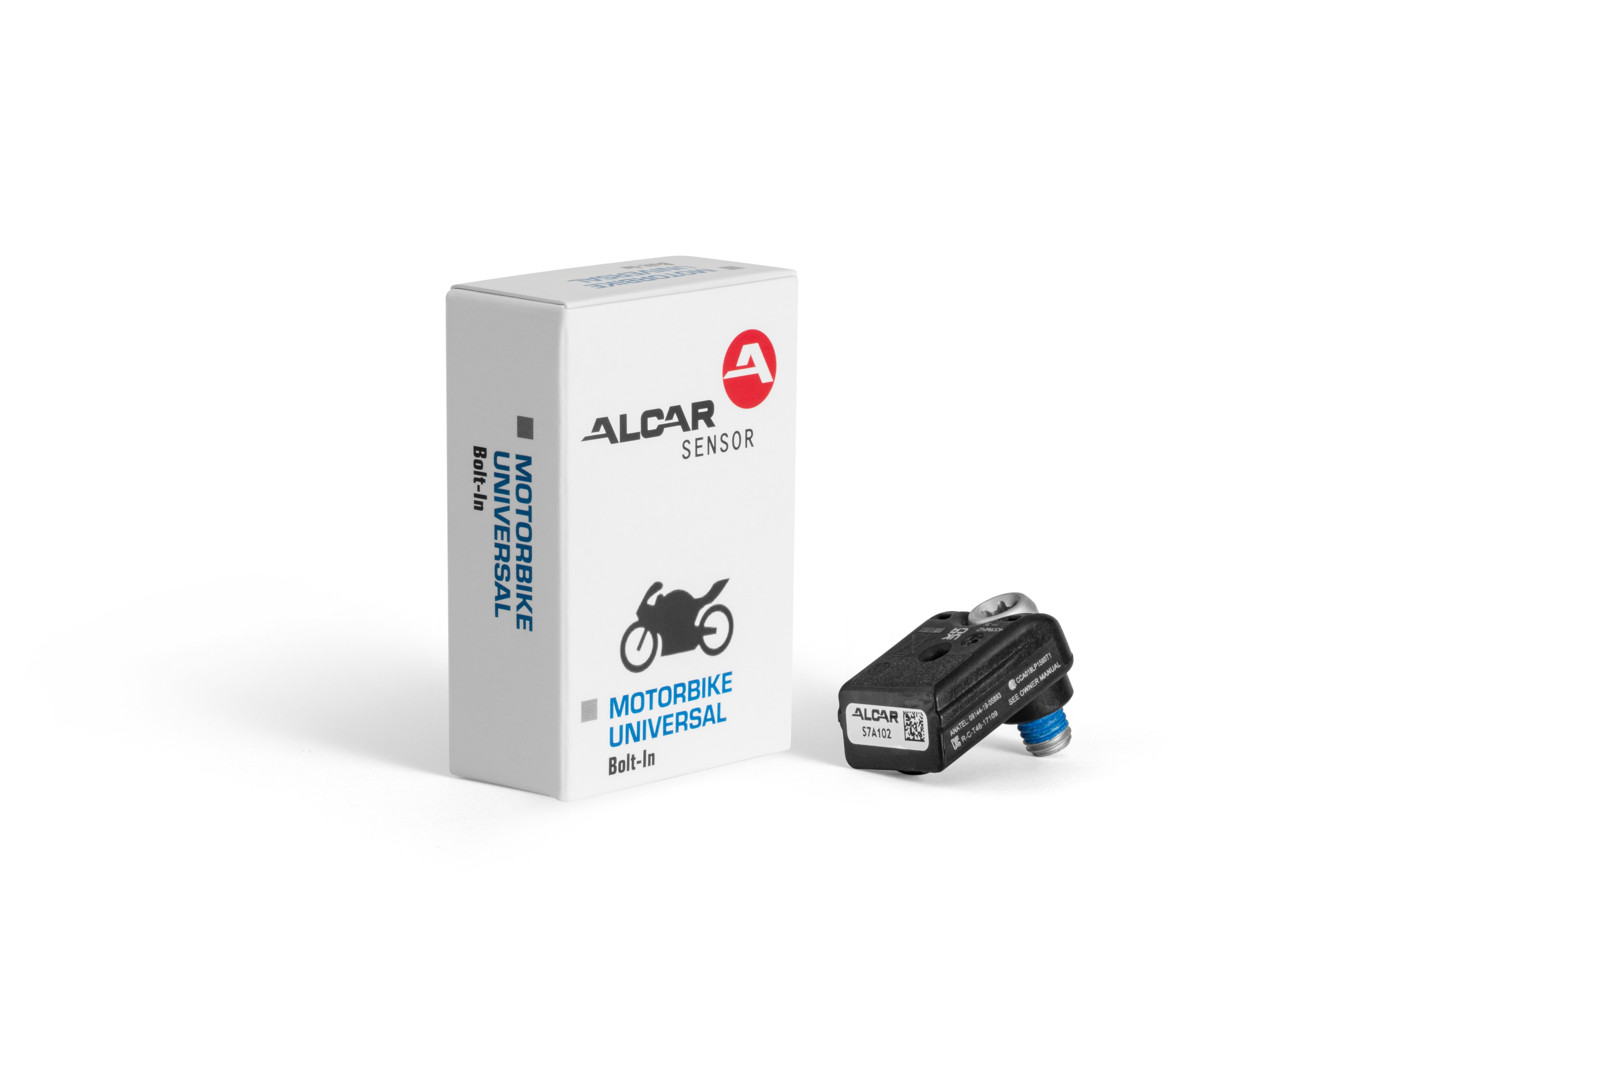 Alcar bietet seine Motorrad-Sensor unter anderem als sogenannte Bolt-In-Variante für die direkte Verschraubung auf der Felgeninnenseite an.